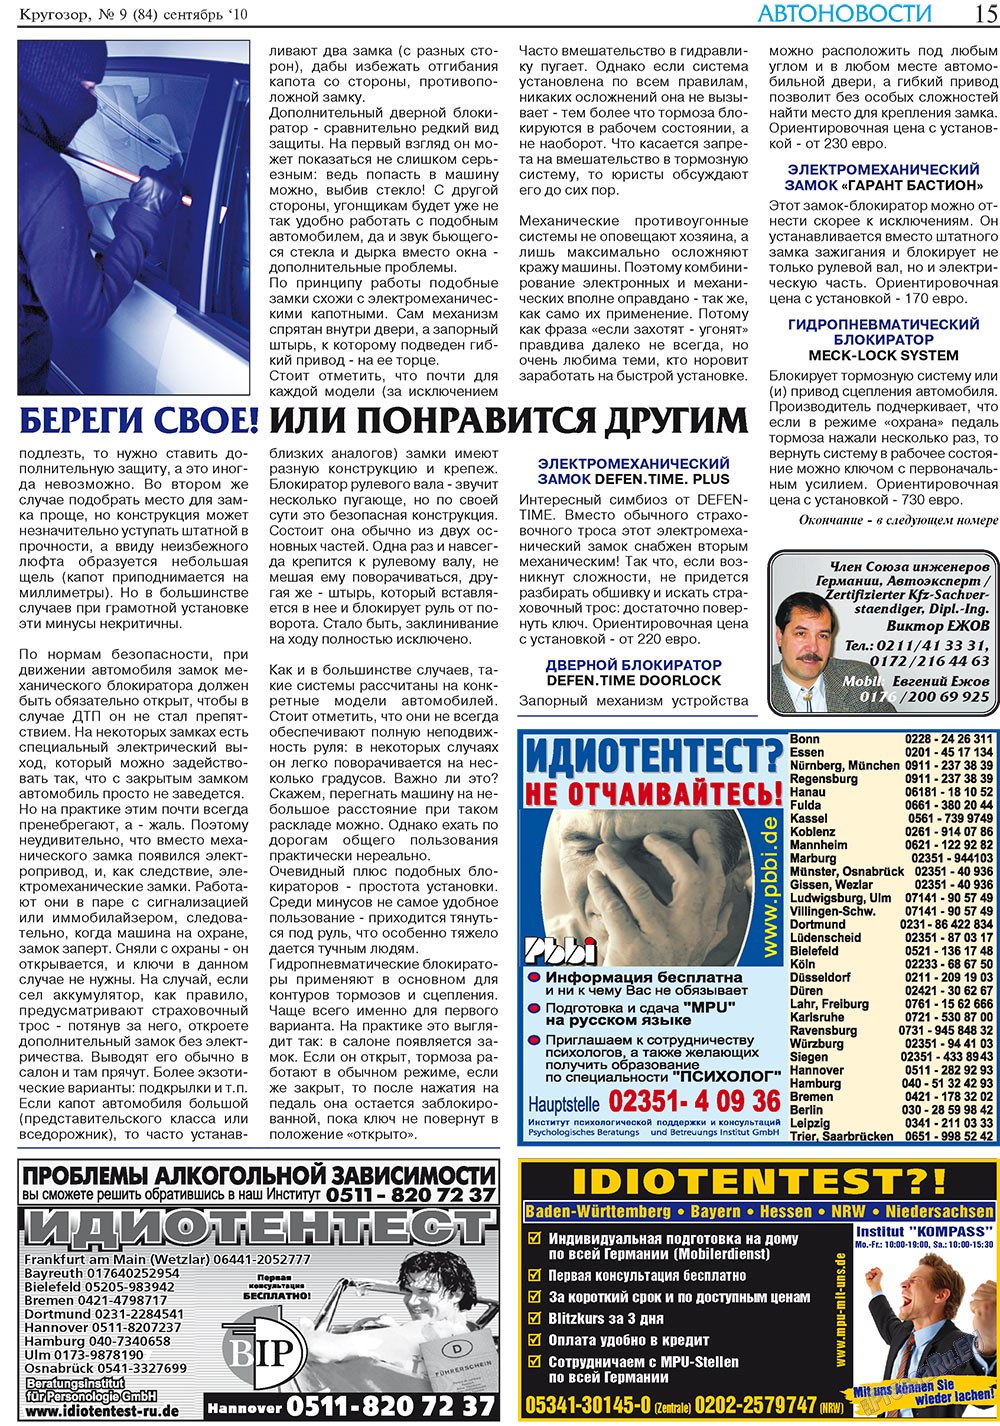 Кругозор плюс!, газета. 2010 №9 стр.15